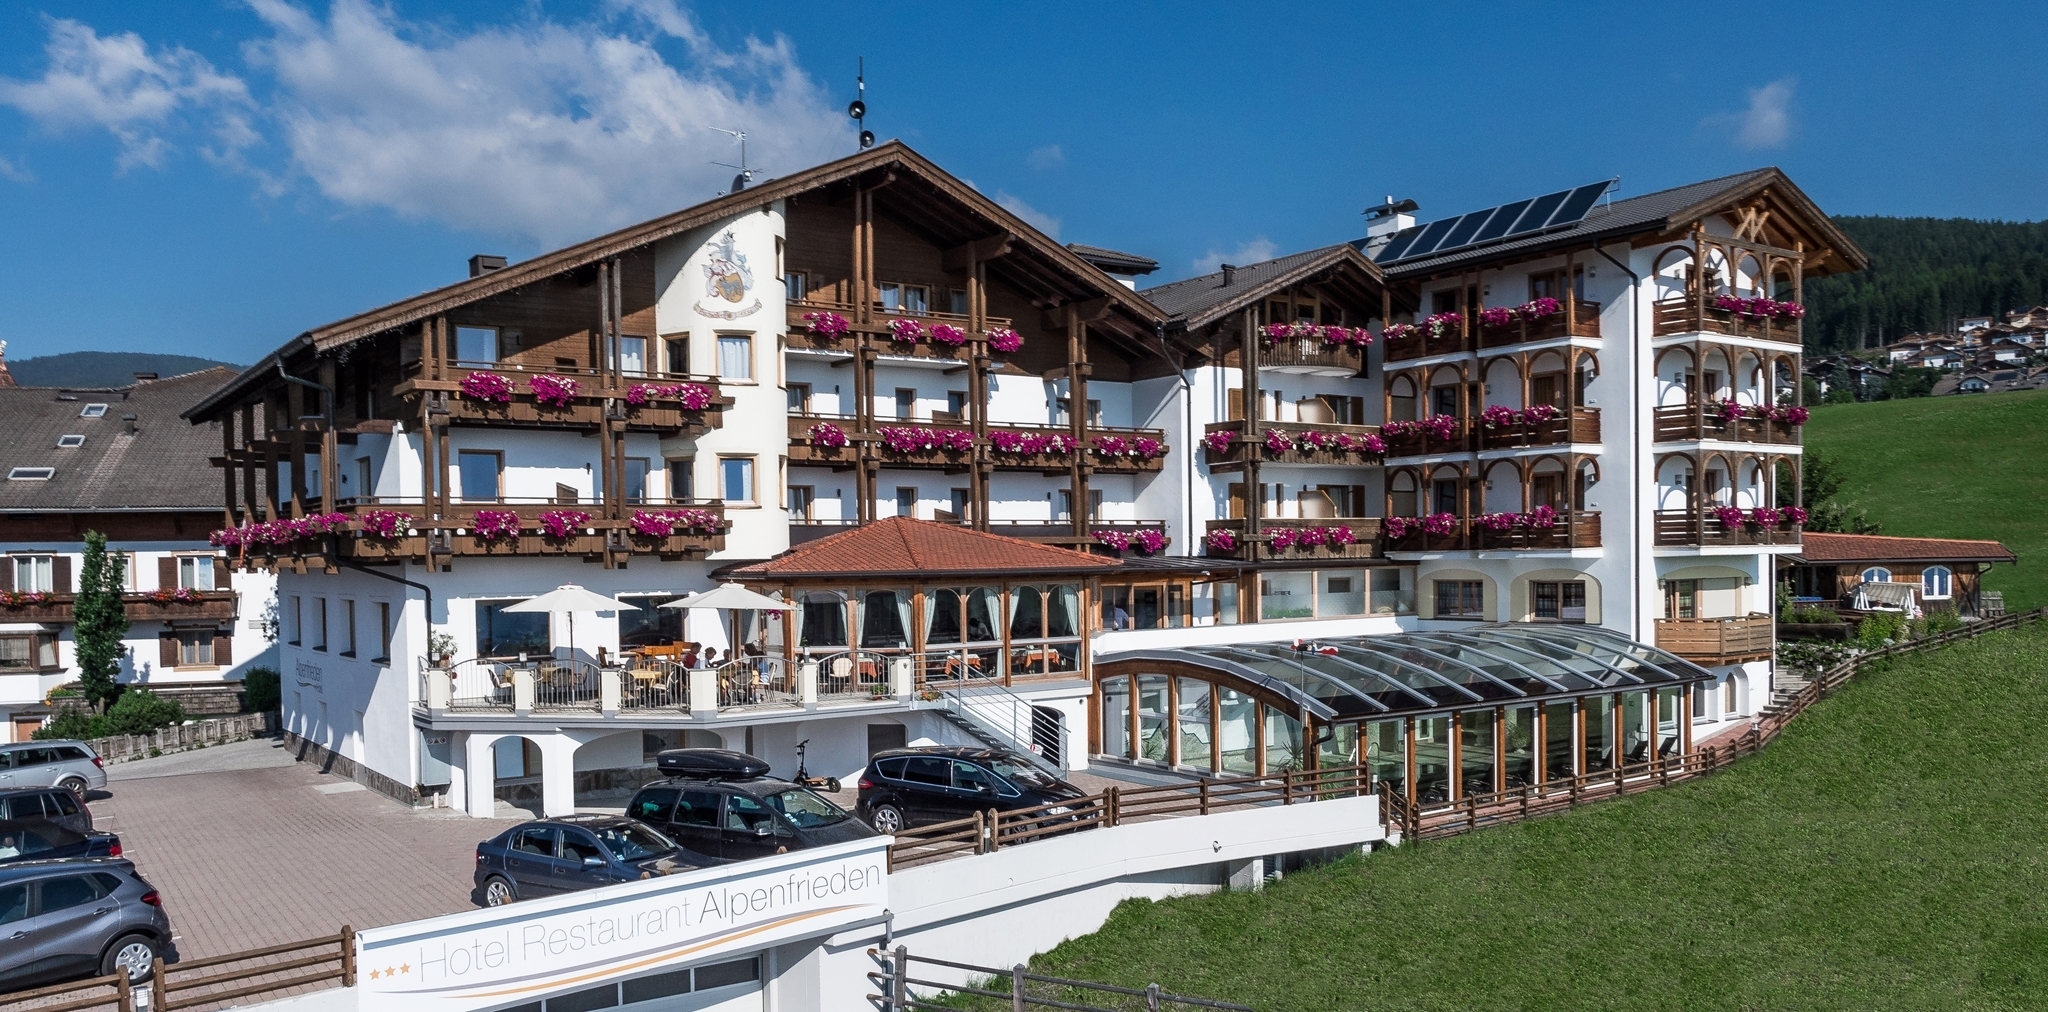 Hotel Alpenfrieden - Maranza in Valle Isarco